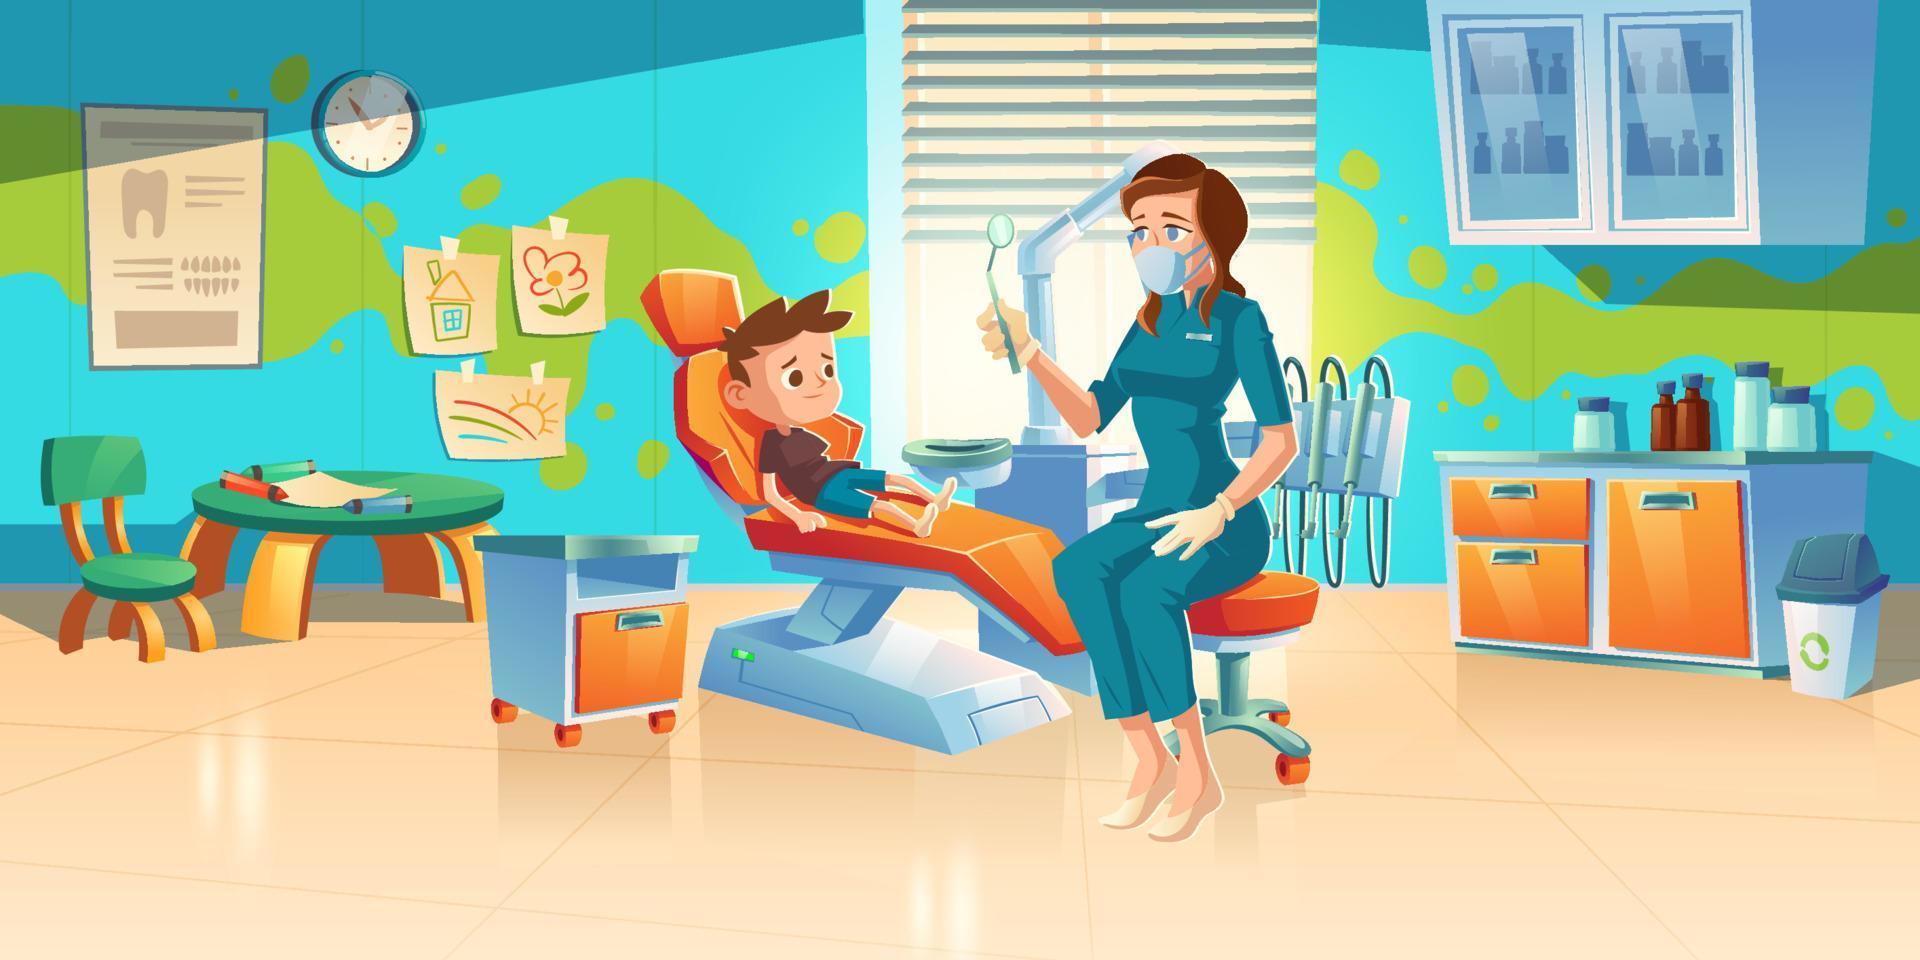 kinderpatient in der zahnarztpraxis oder zahnklinik vektor